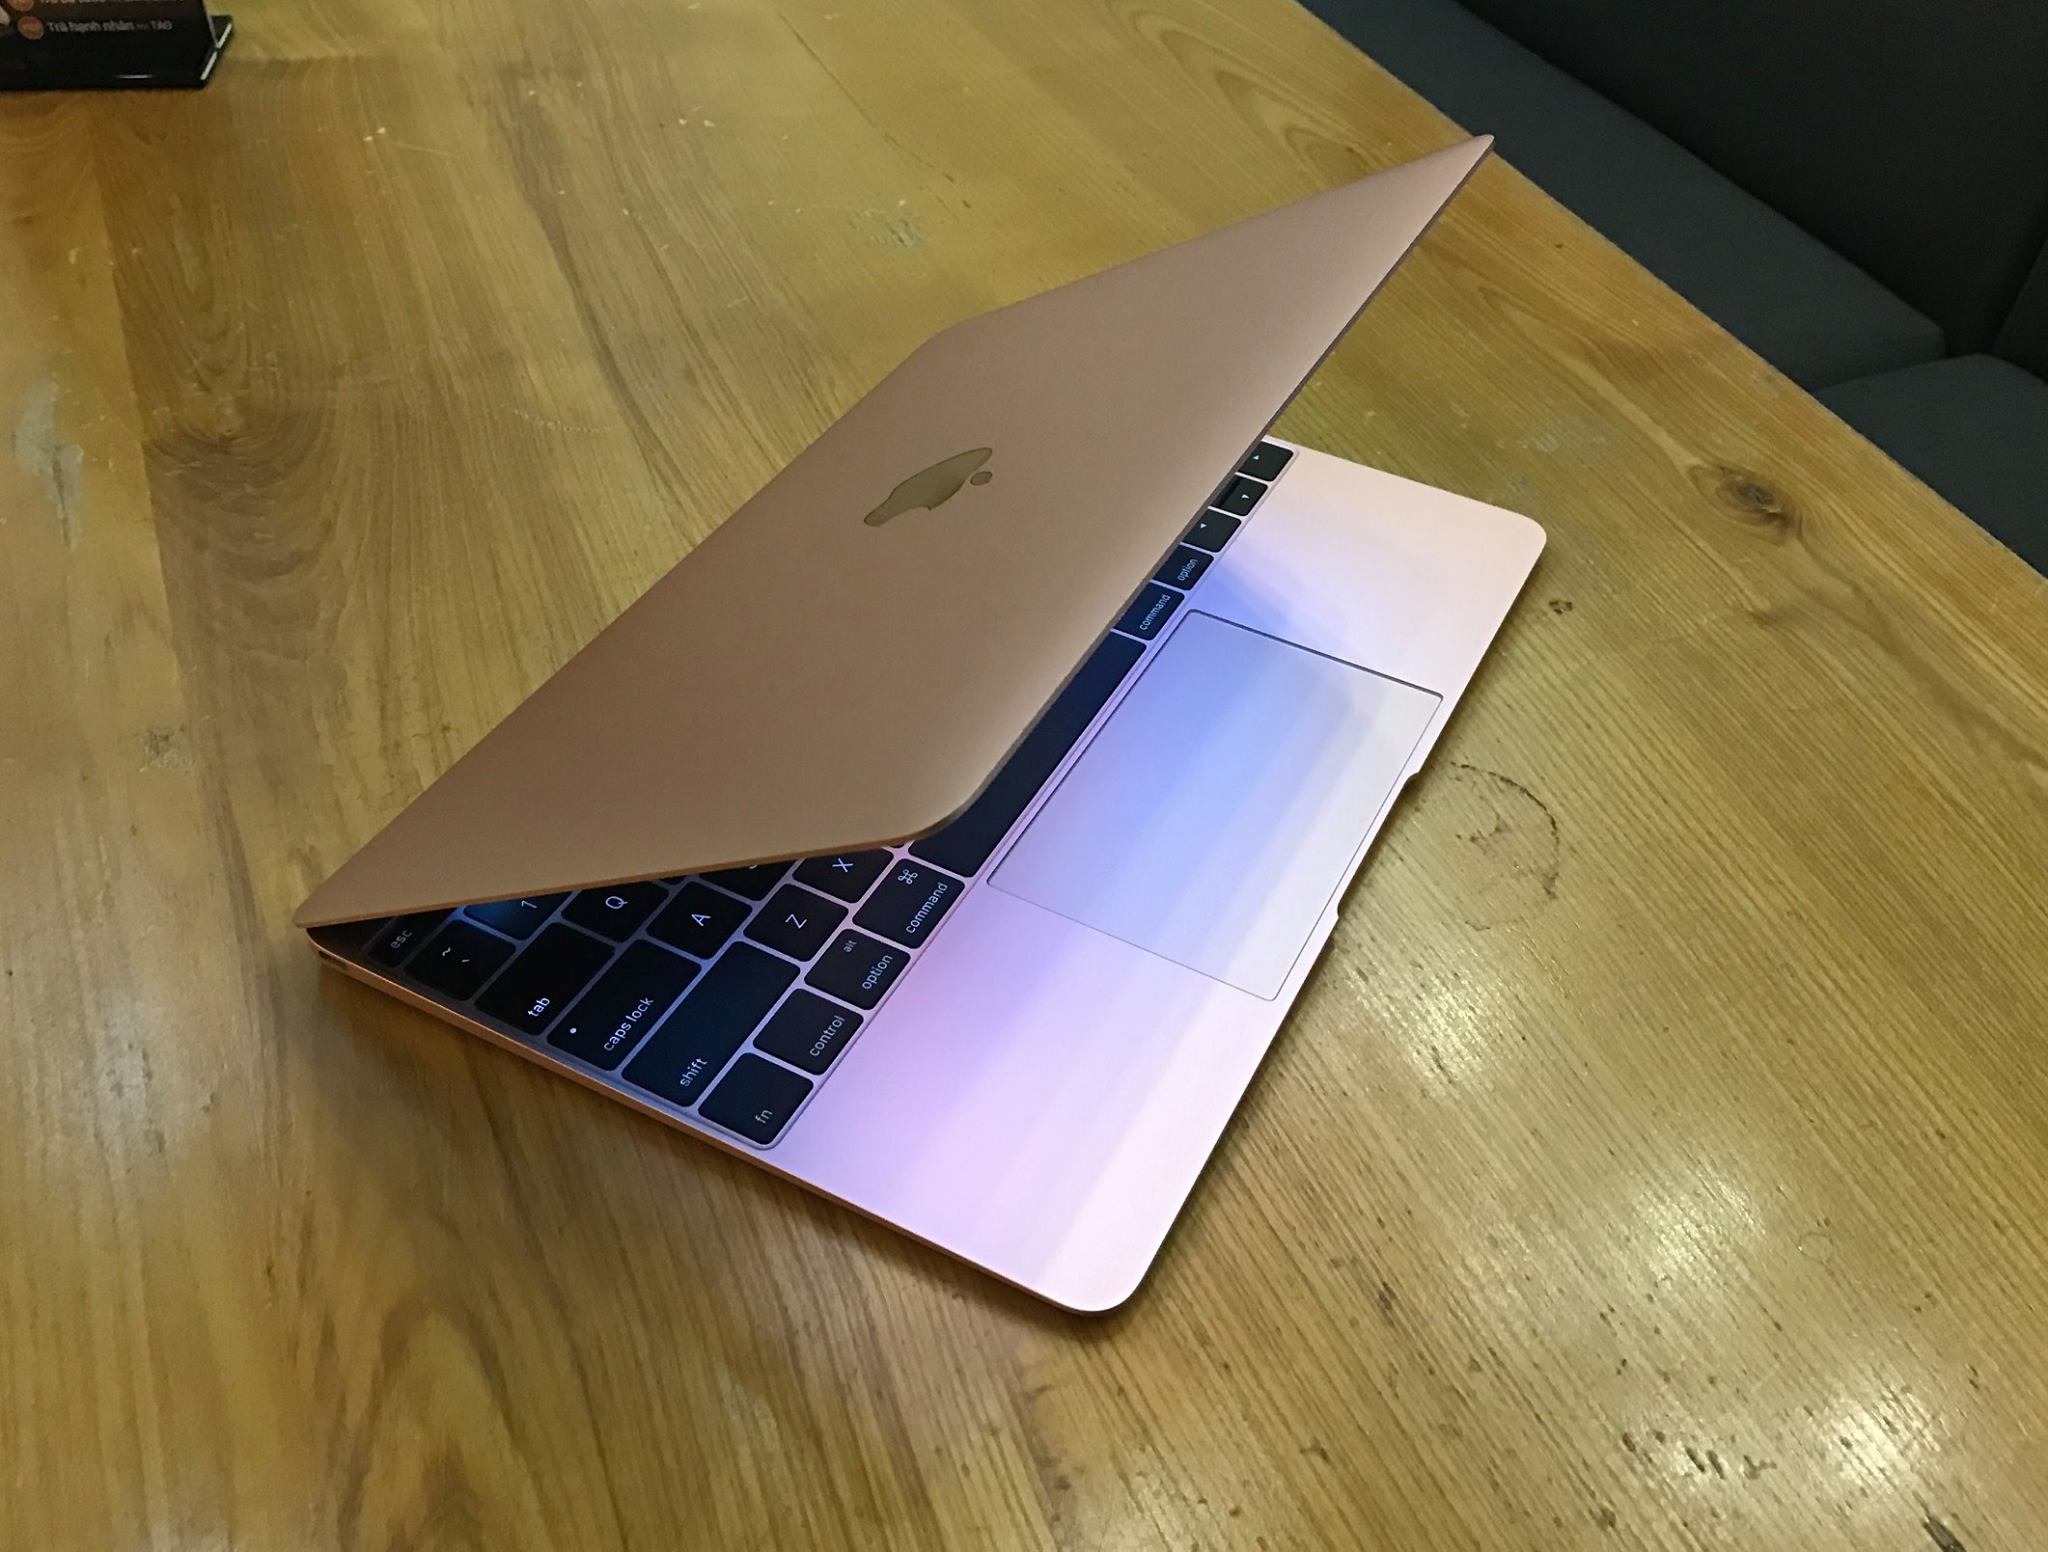 Apple The New Macbook 2016 - MLHA2 ROSE GLOD-8.jpg